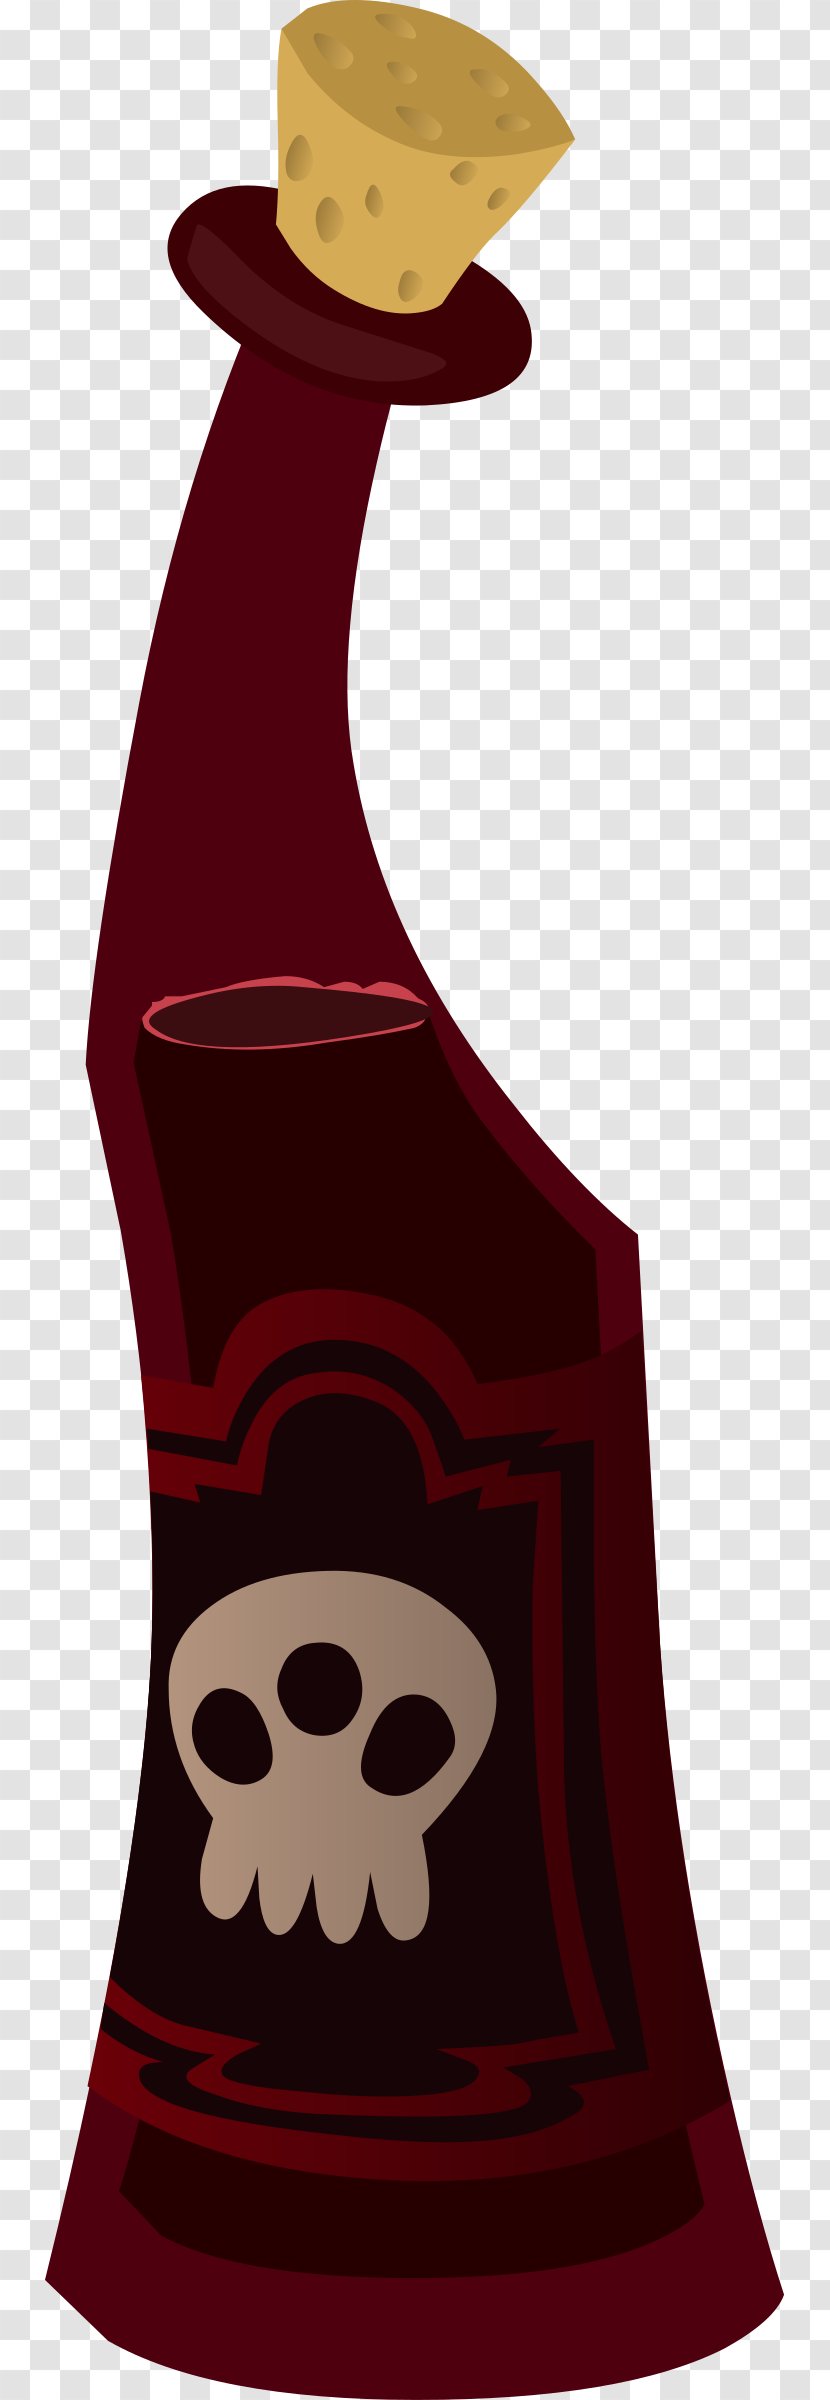 Red Wine Bottle Clip Art - Food - Popular Transparent PNG